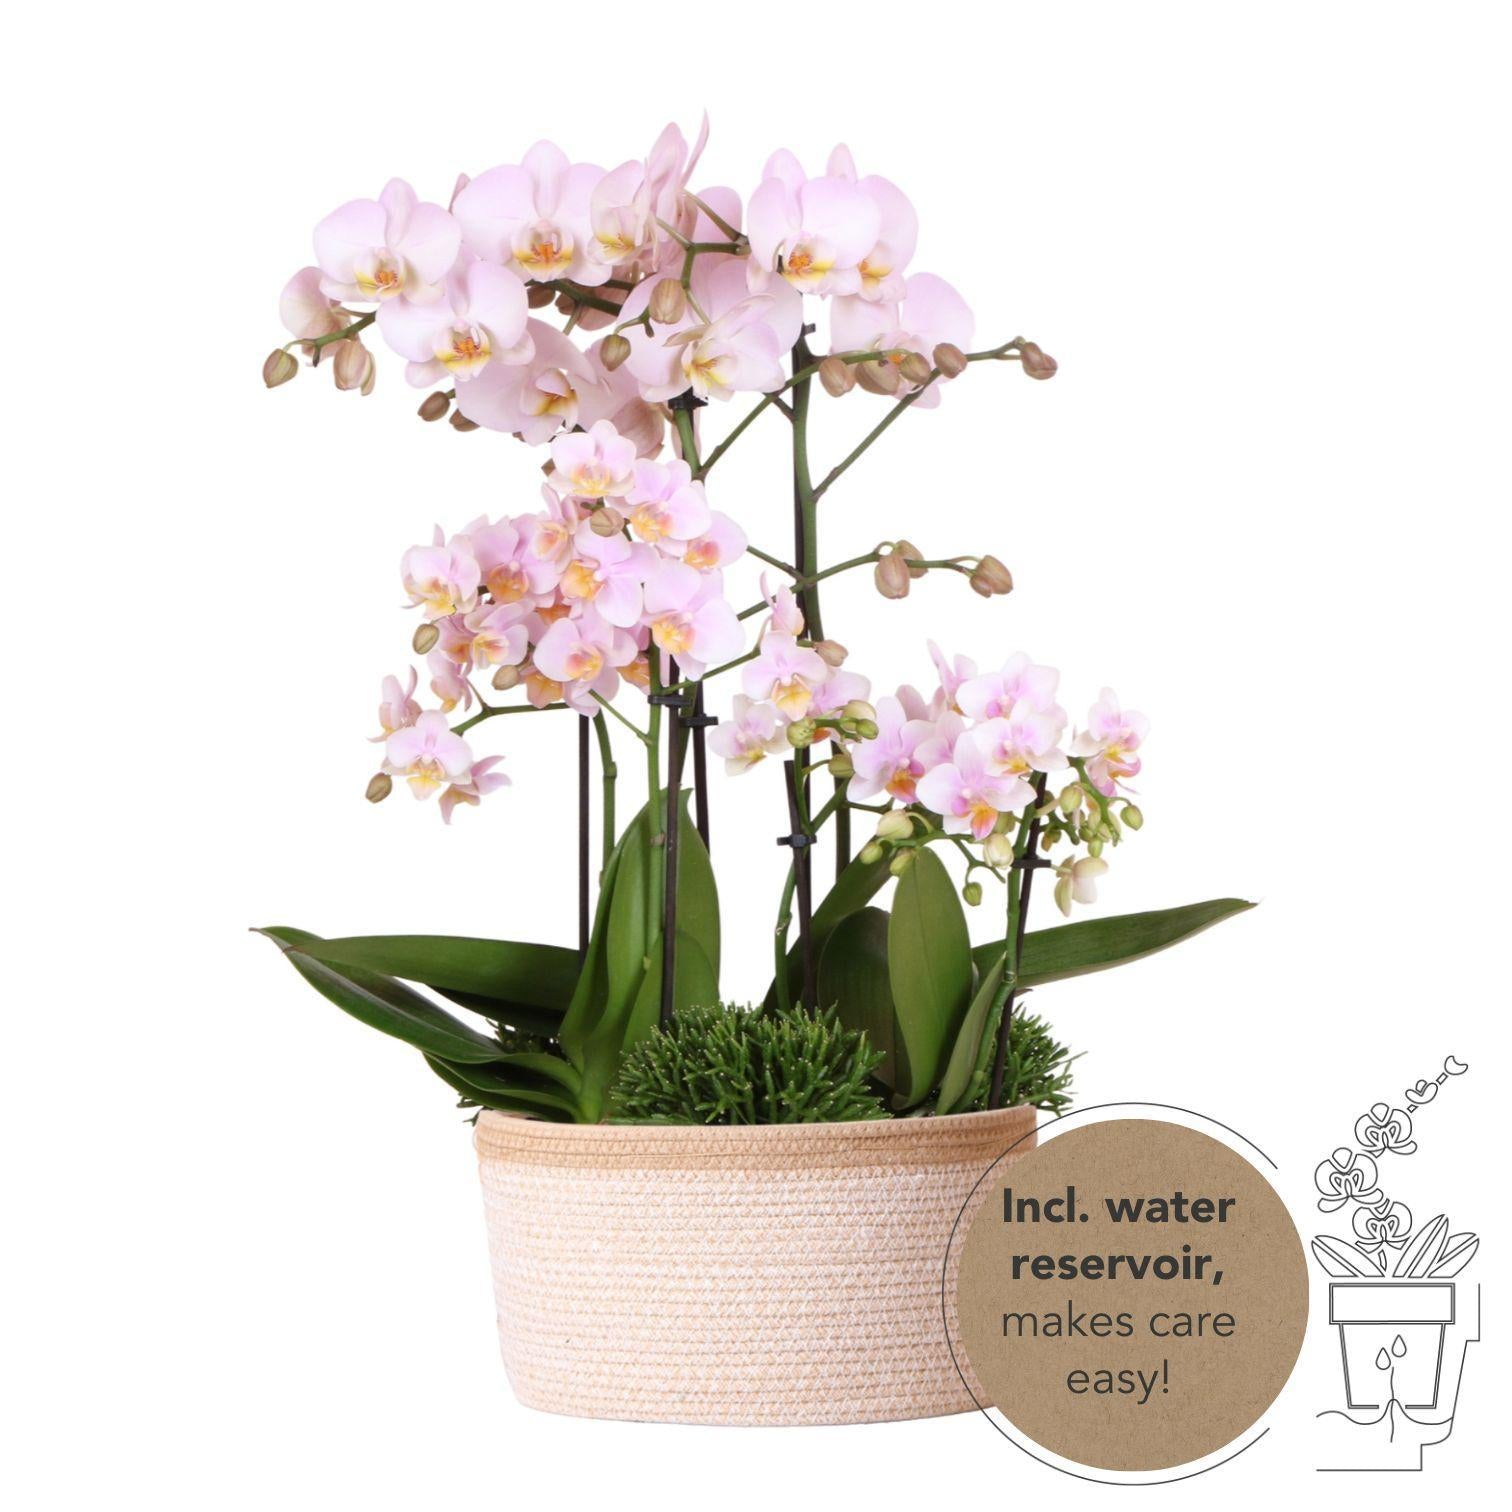 Kolibri Orchids | roze plantenset in Cotton Basket incl. waterreservoir | drie roze orchideeën en drie groene planten Rhipsalis | Field Bouquet roze met zelfvoorzienend waterreservoir